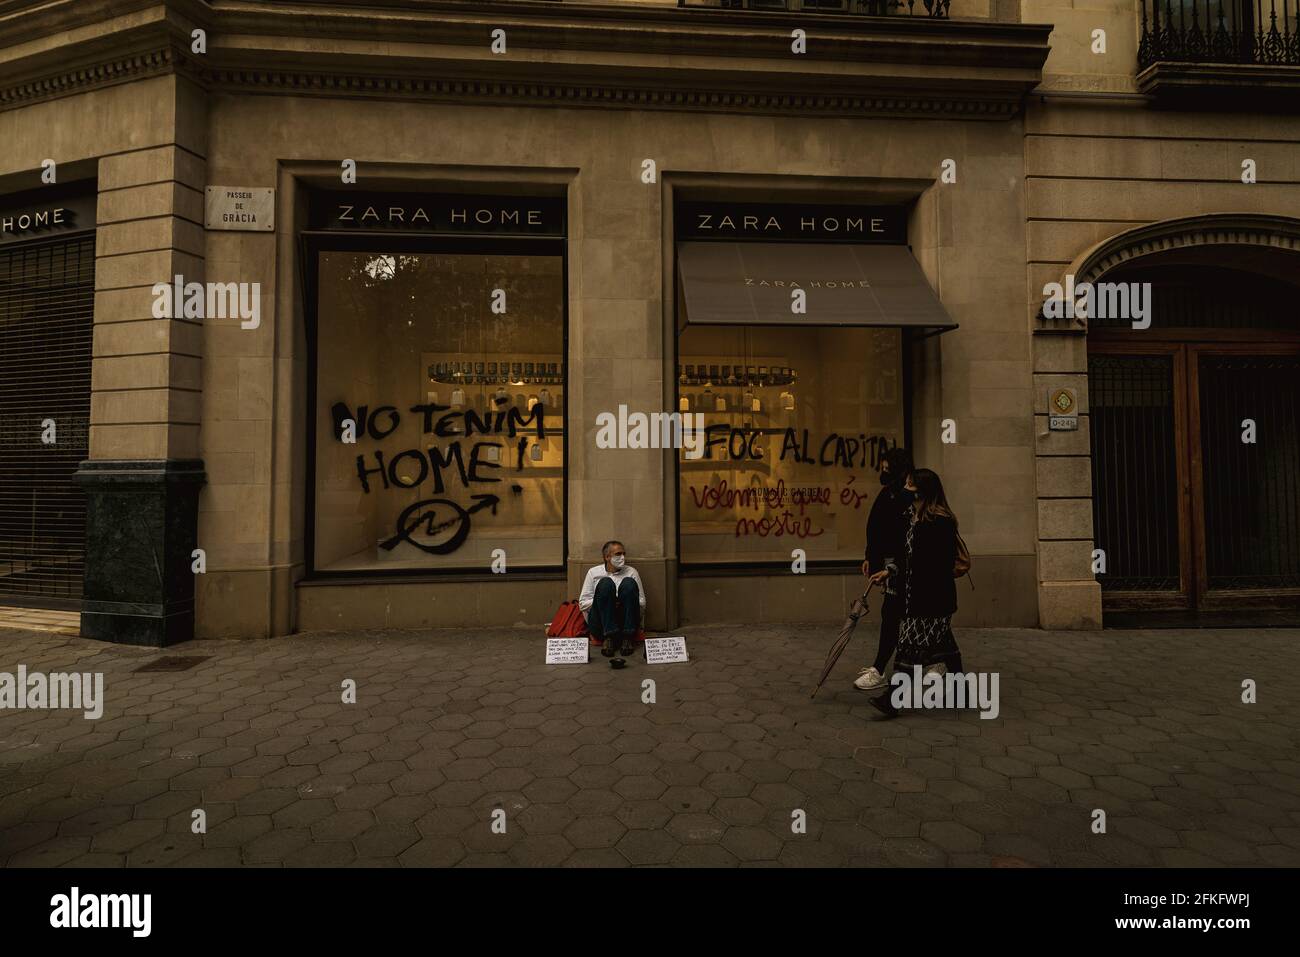 Barcellona, Spagna. 1 maggio 2021. Un uomo senza casa si siede di fronte a  un negozio 'ZARA HOME' dopo che gli attivisti hanno dipinto 'non abbiamo  una casa' sulla finestra durante una